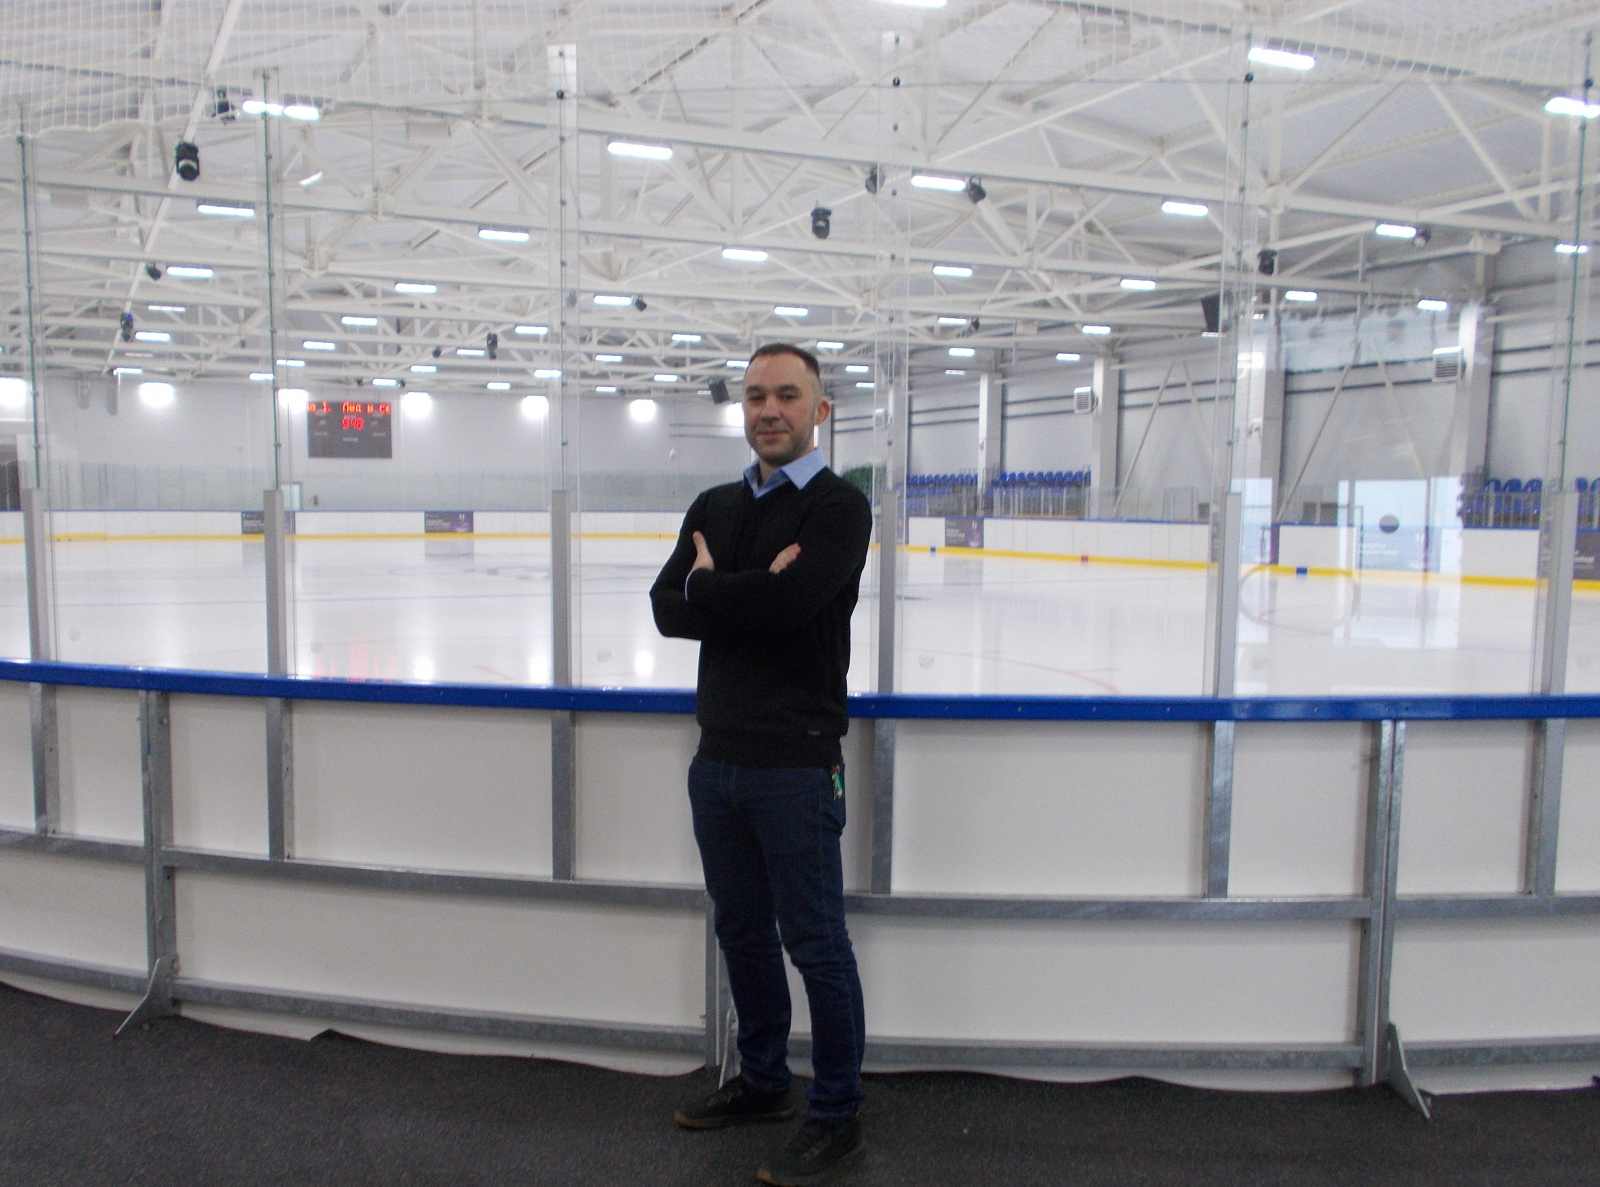 Алексей Бояркин: «Мы хотели создать спортивный объект со льдом для детей». ЕвроМедиа